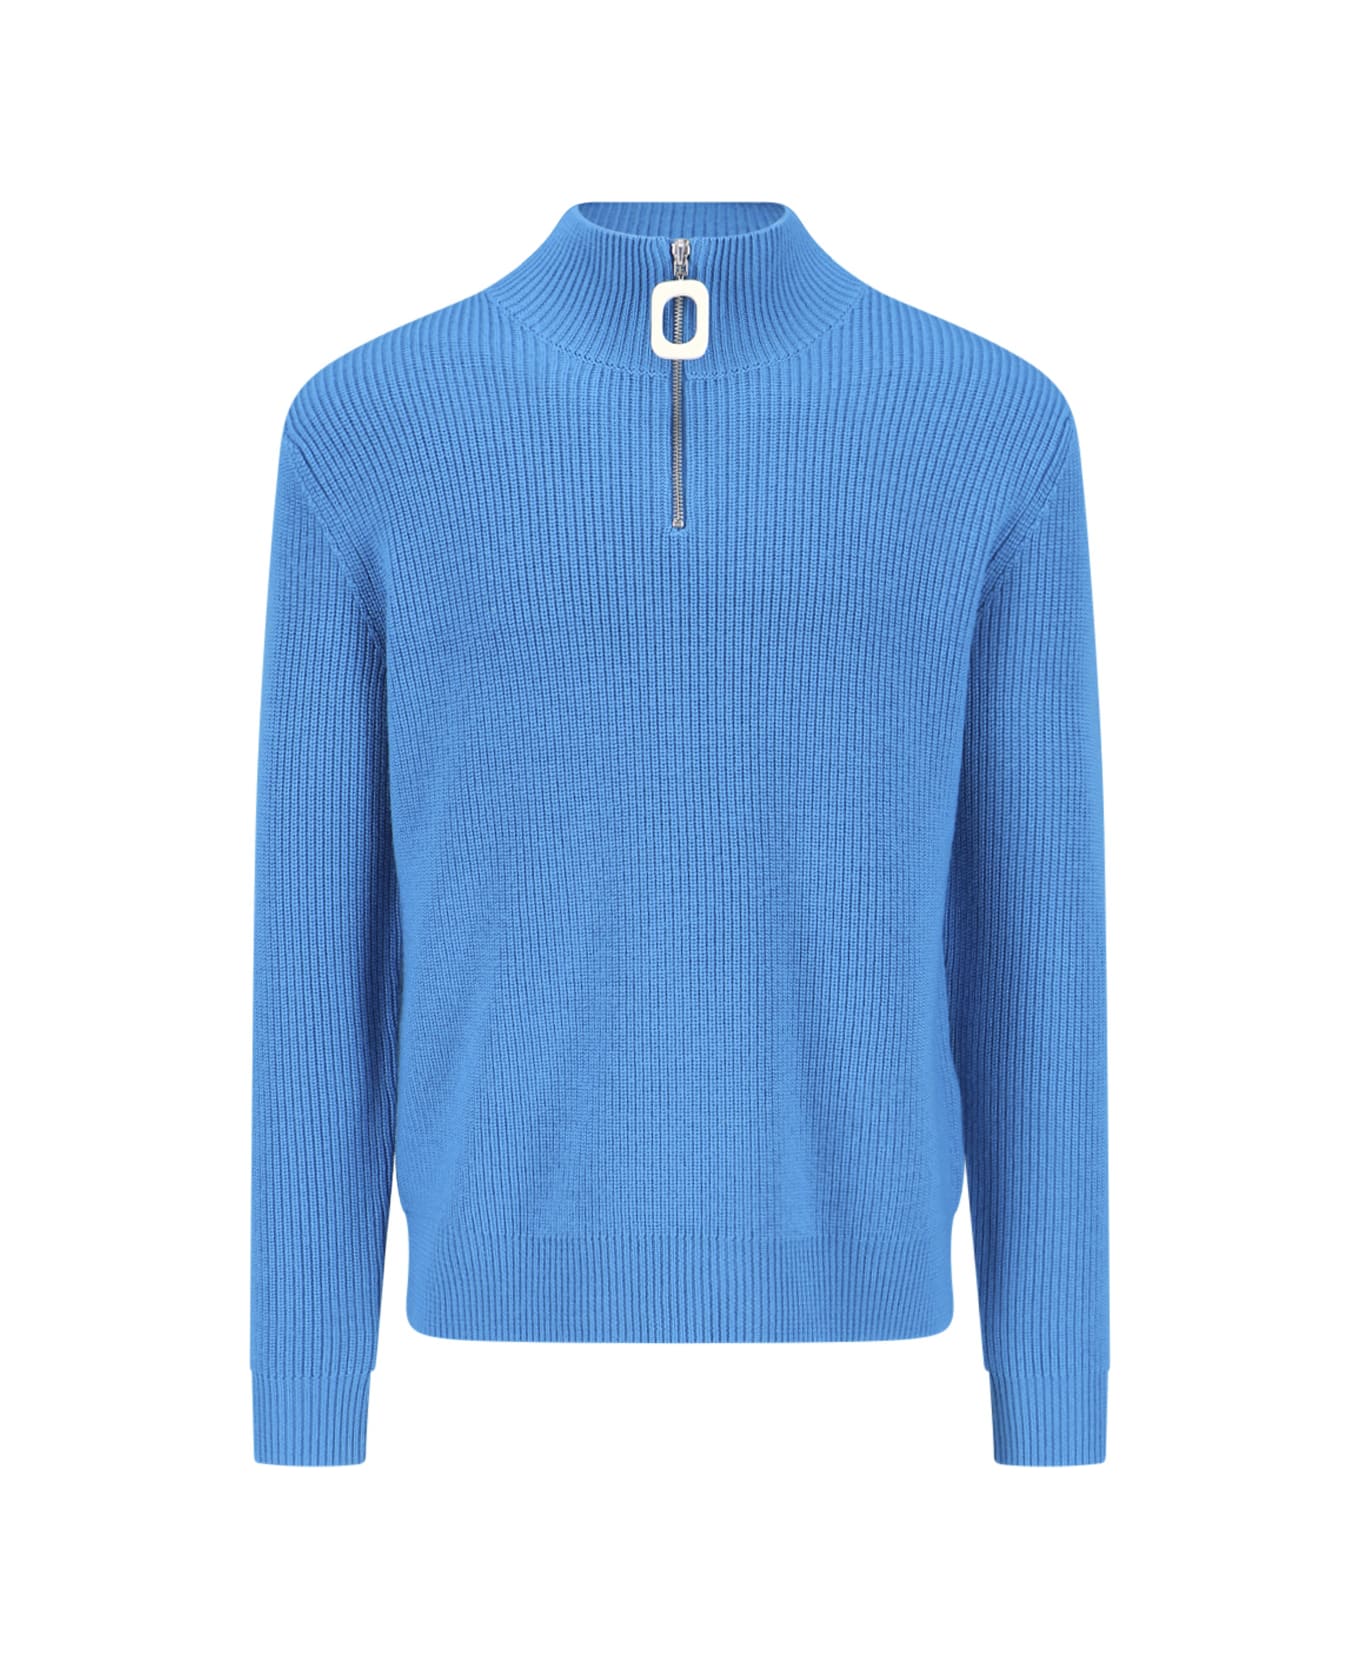 J.W. Anderson High Neck Sweater - Light Blue ニットウェア